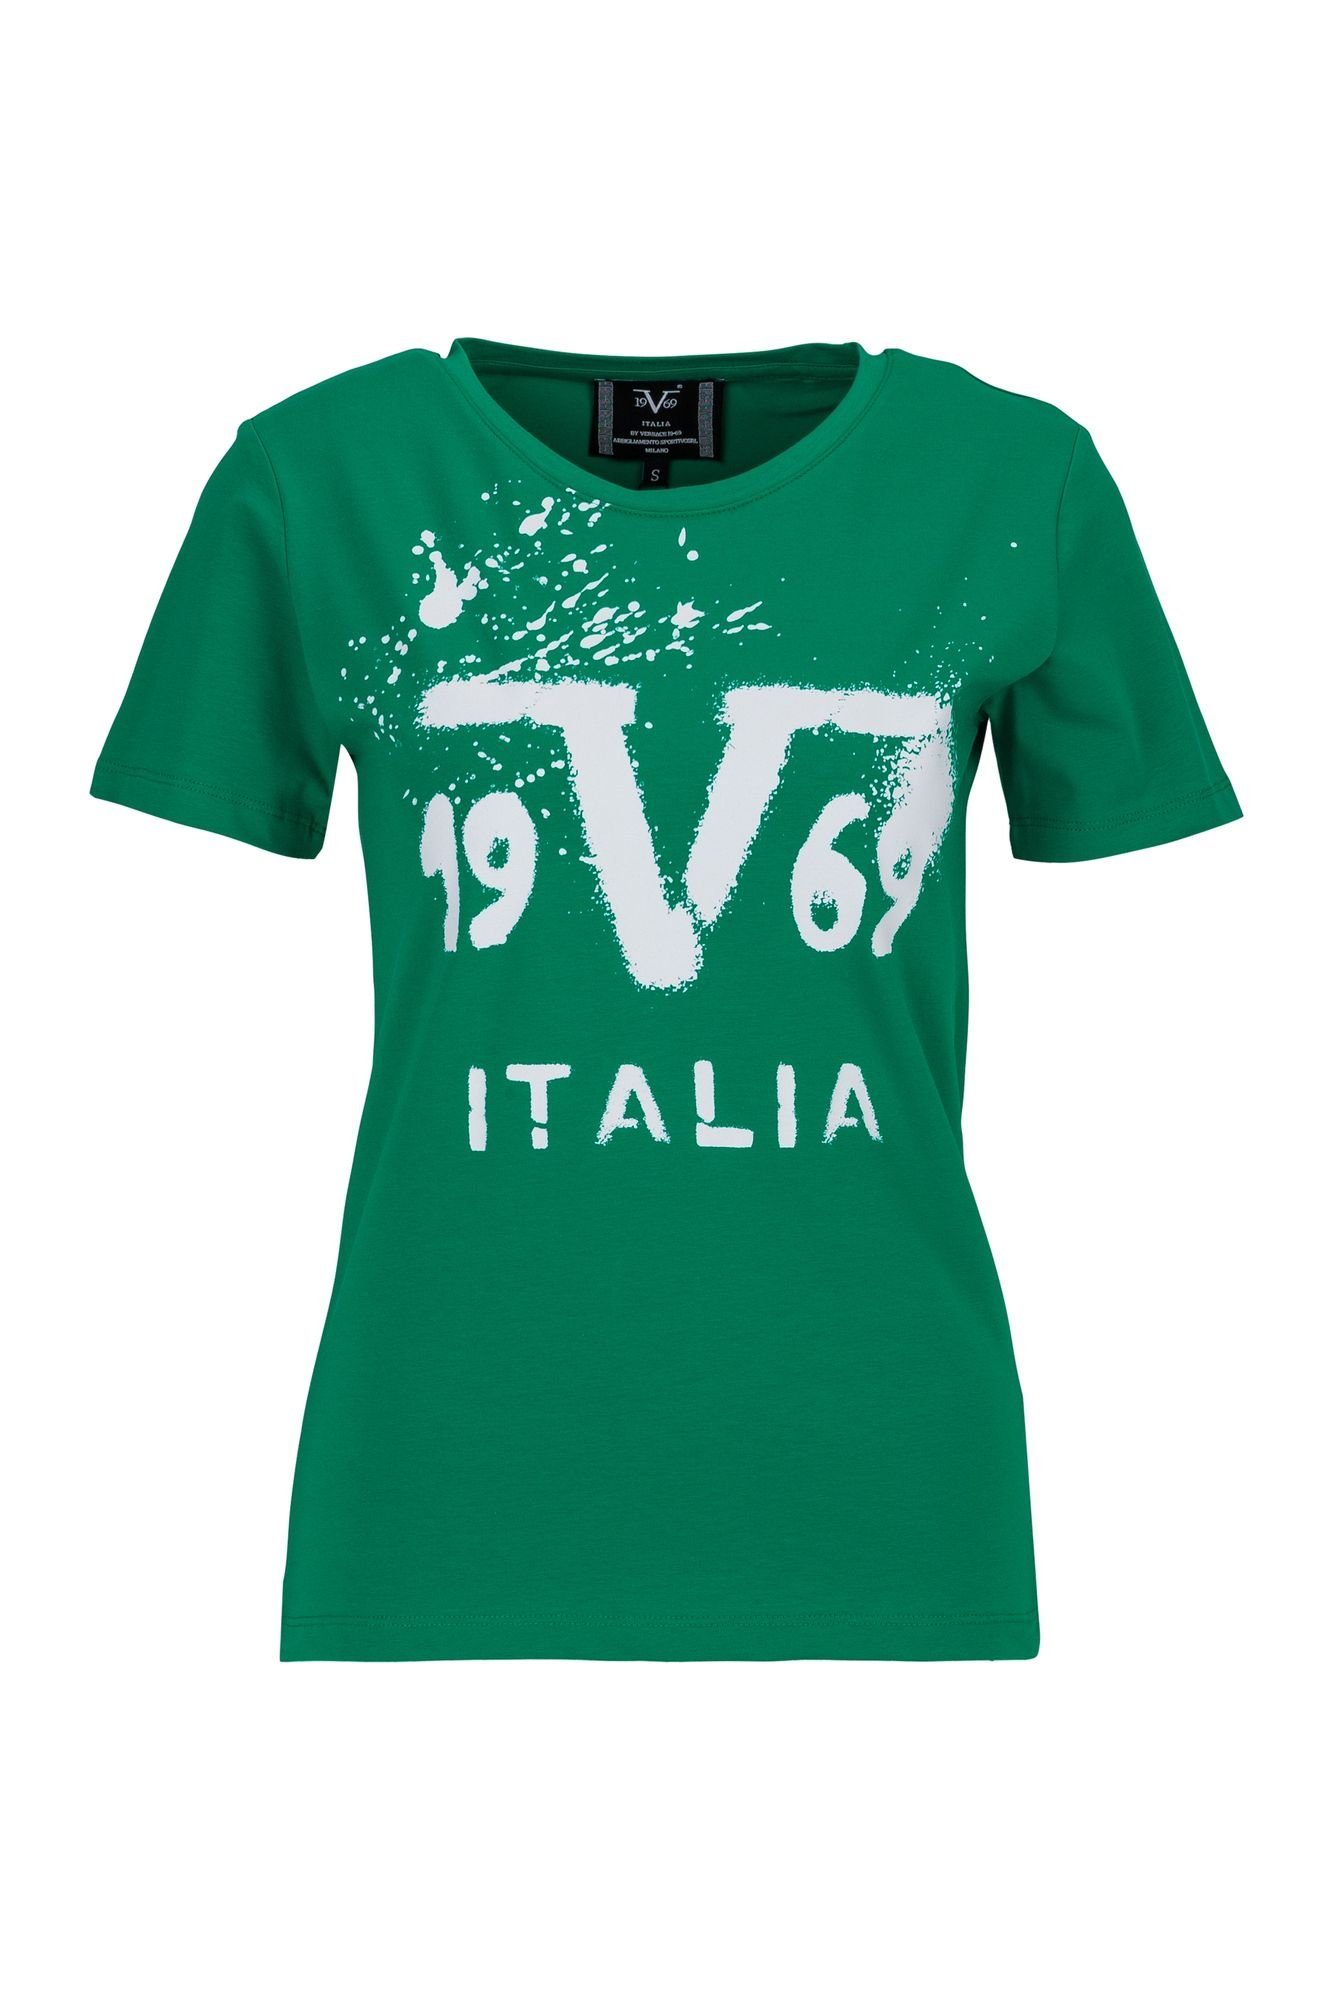 19V69 Italia by Chiara Versace T-Shirt